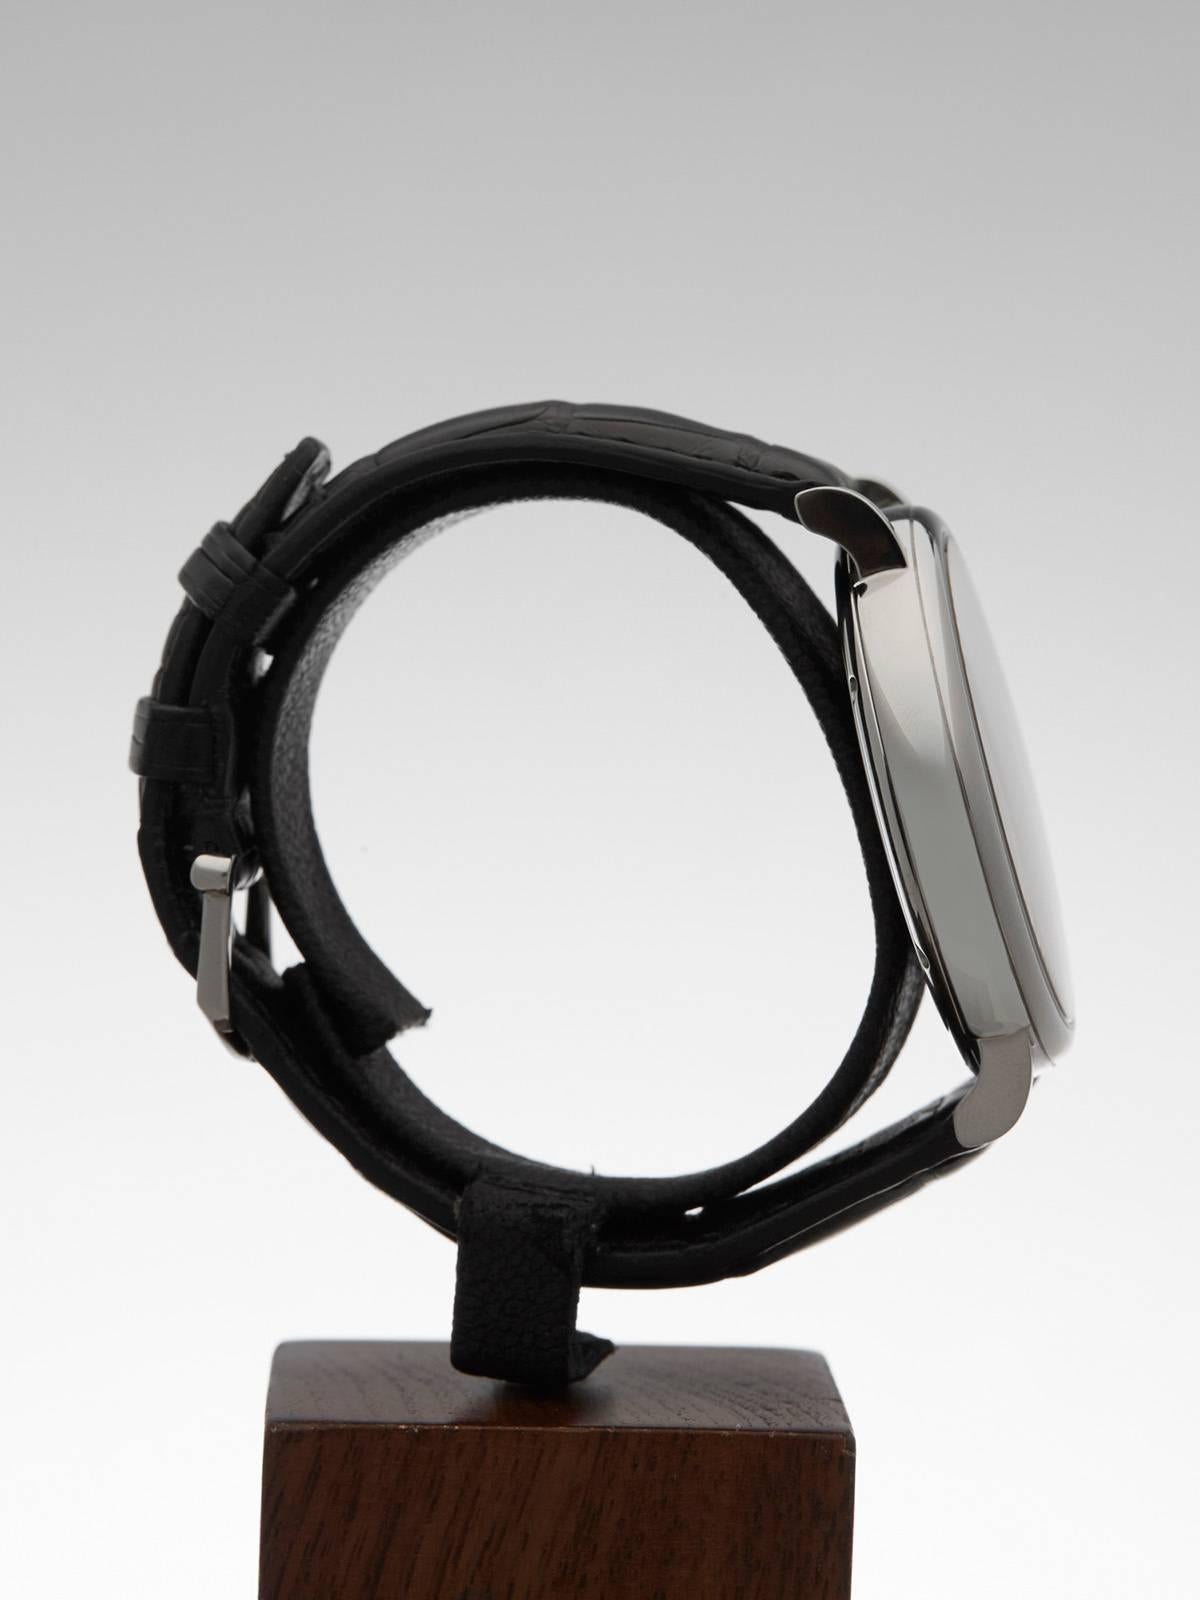  IWC Stainless Steel Portofino Automatic Wristwatch Ref IW356507 2014 2